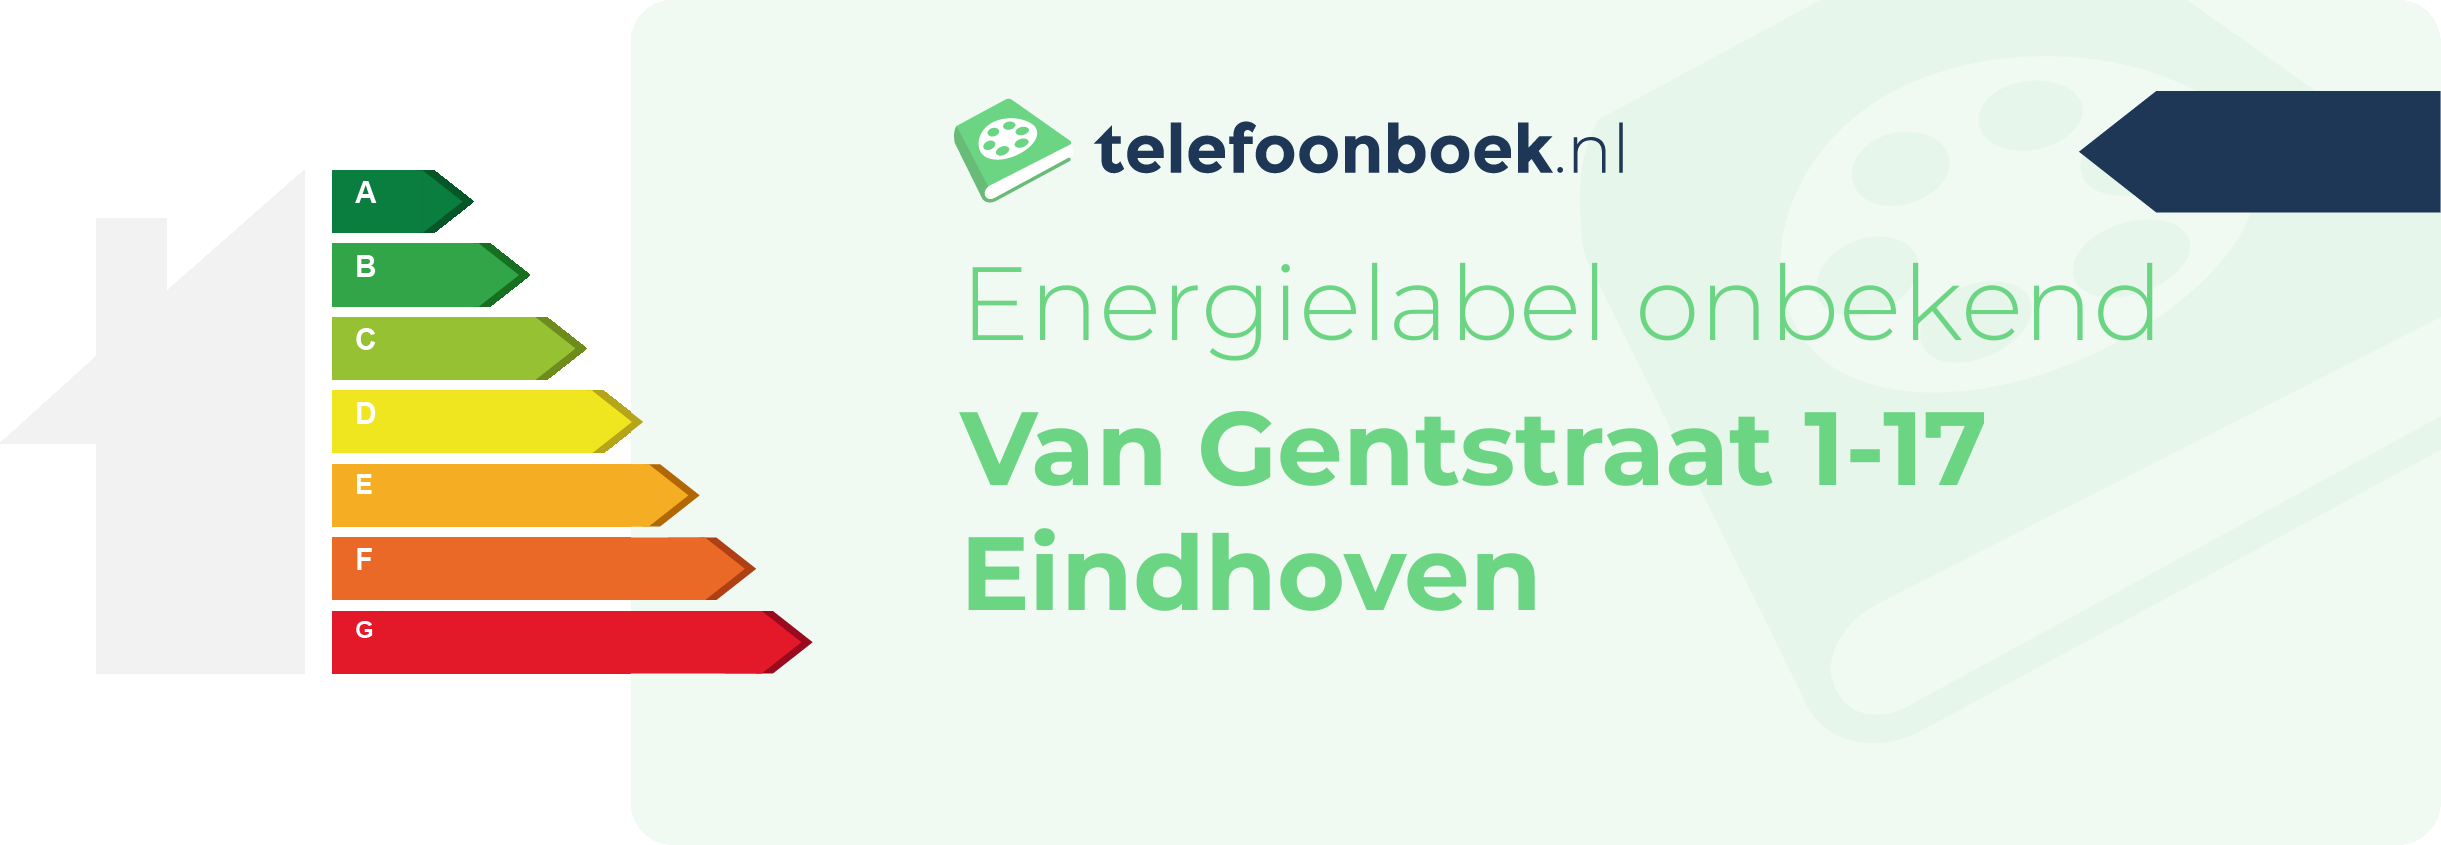 Energielabel Van Gentstraat 1-17 Eindhoven